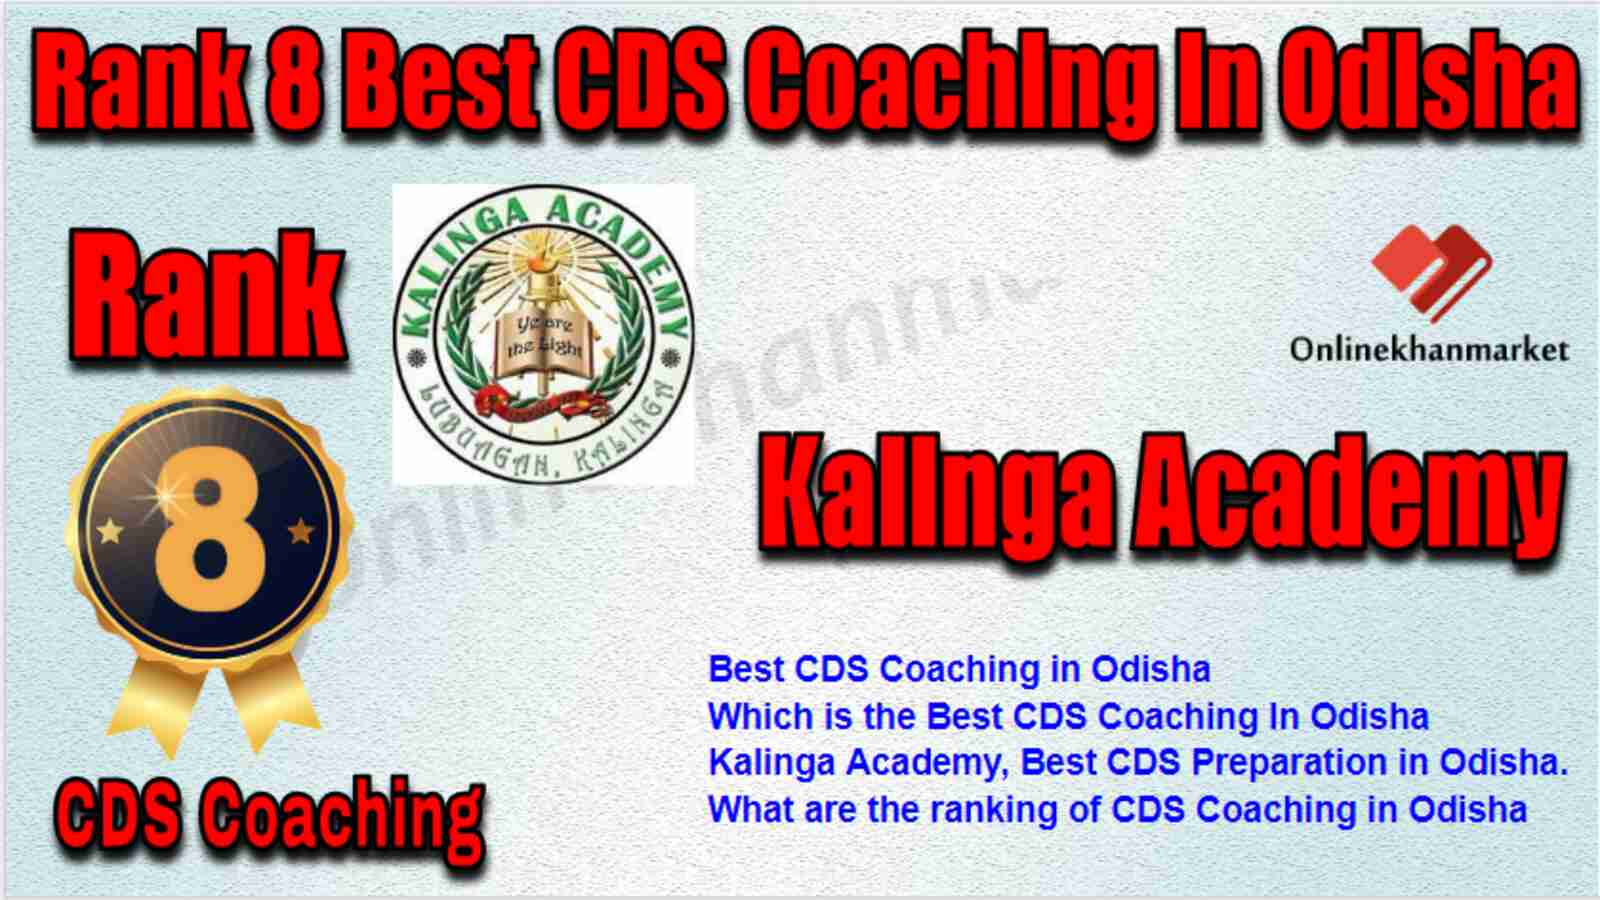 Rank 8 Best CDS Coaching in Odisha